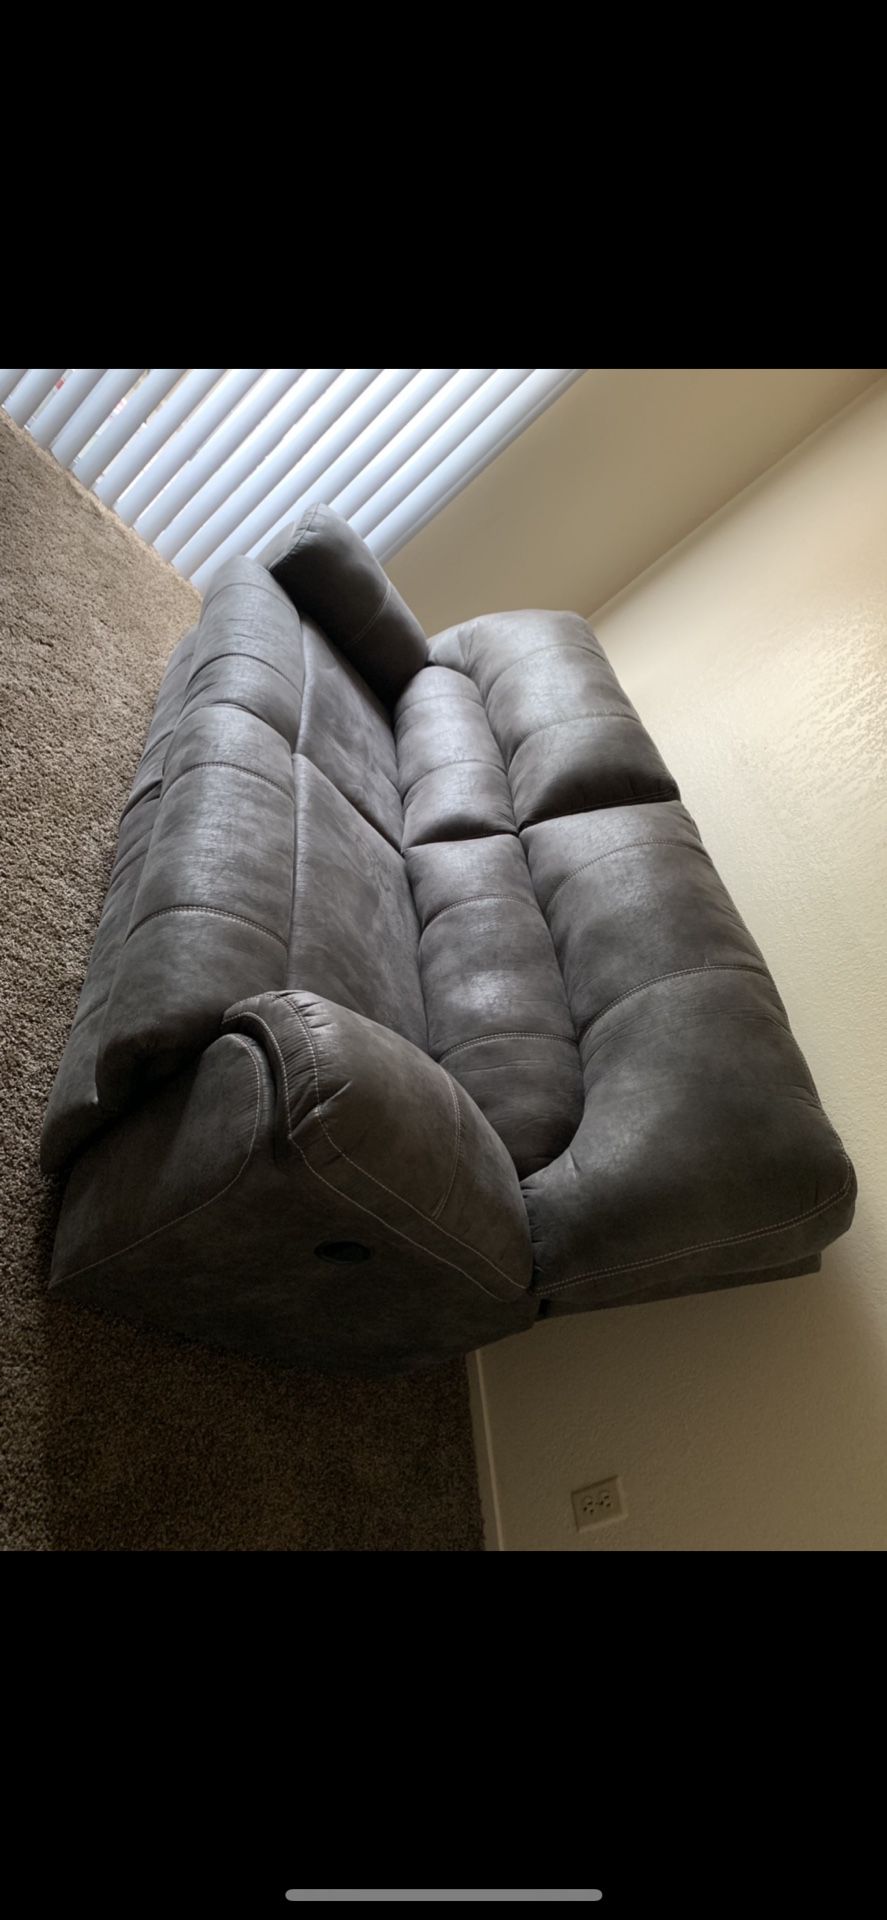 Sofa recliner